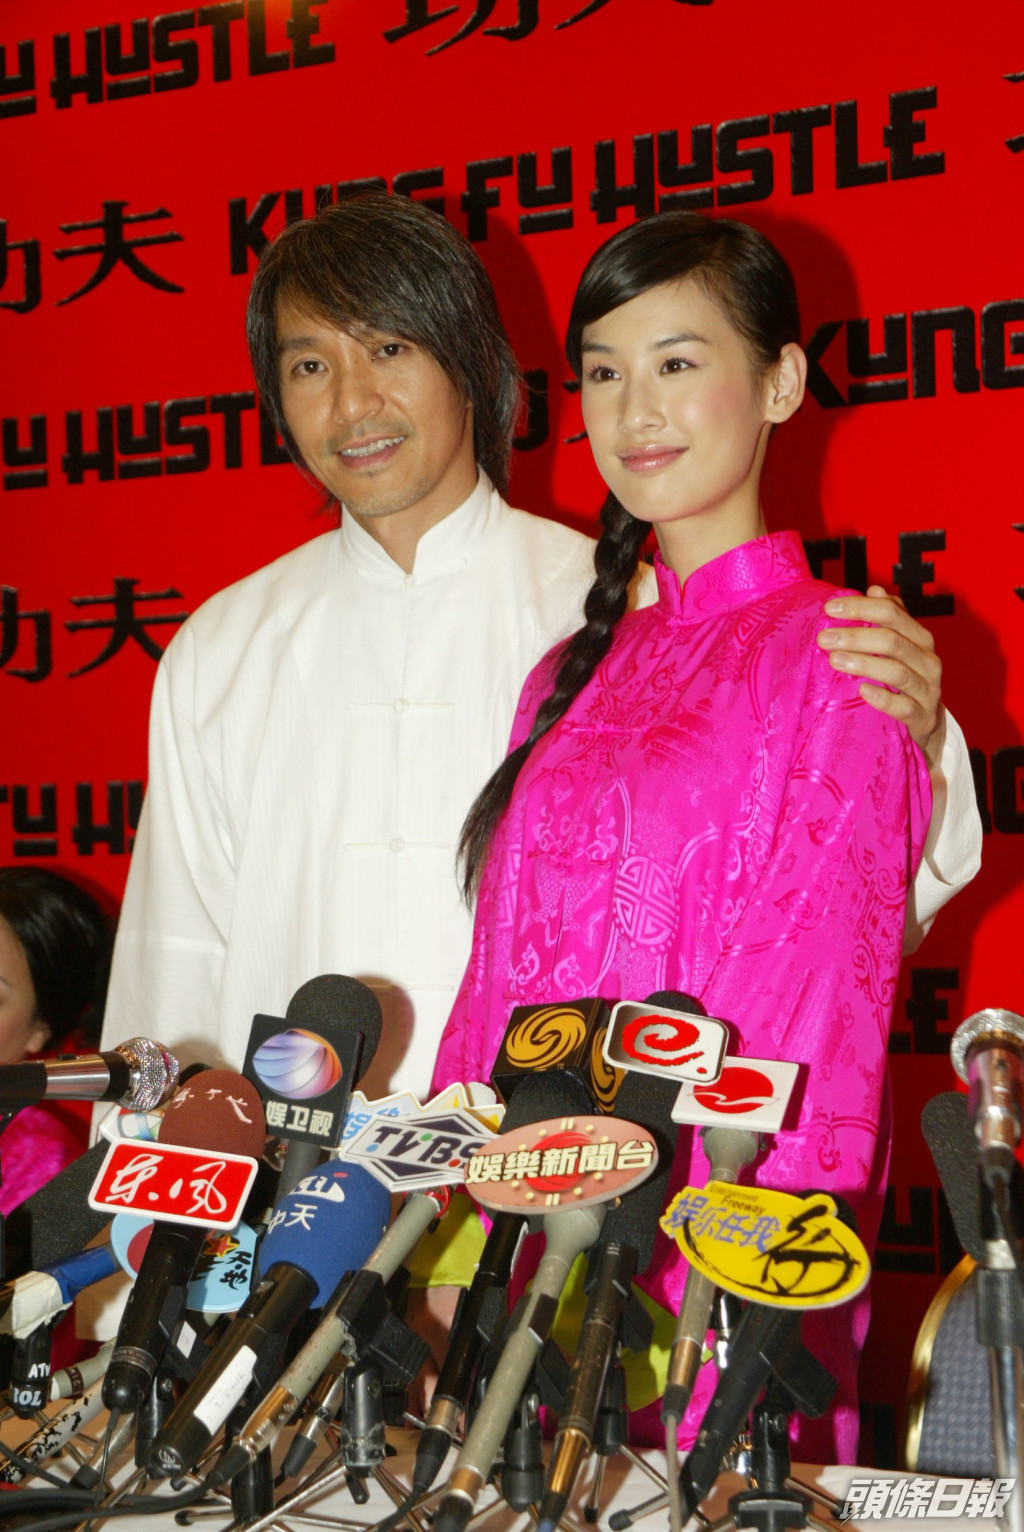 黃聖依2004年於周星馳電影《功夫》中飾演啞女一角成名。